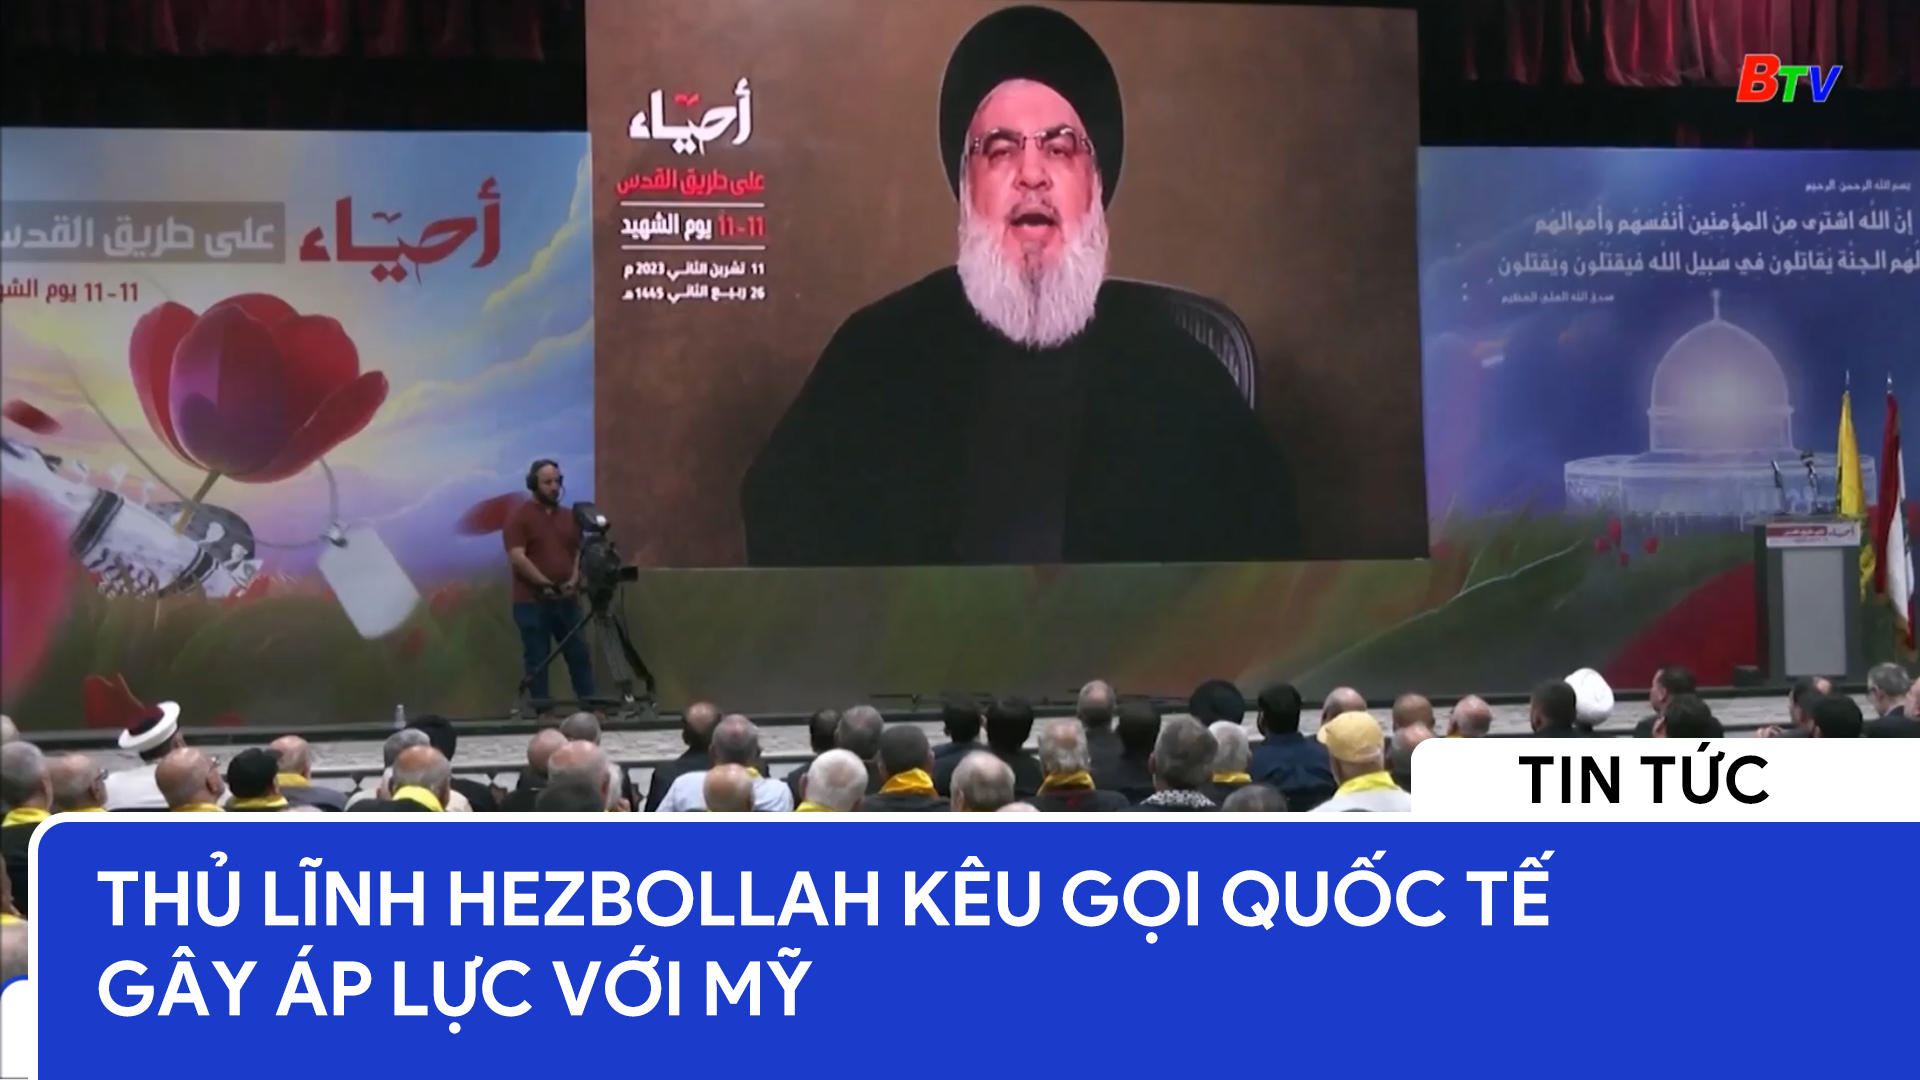 Thủ lĩnh Hezbollah kêu gọi quốc tế gây áp lực với Mỹ